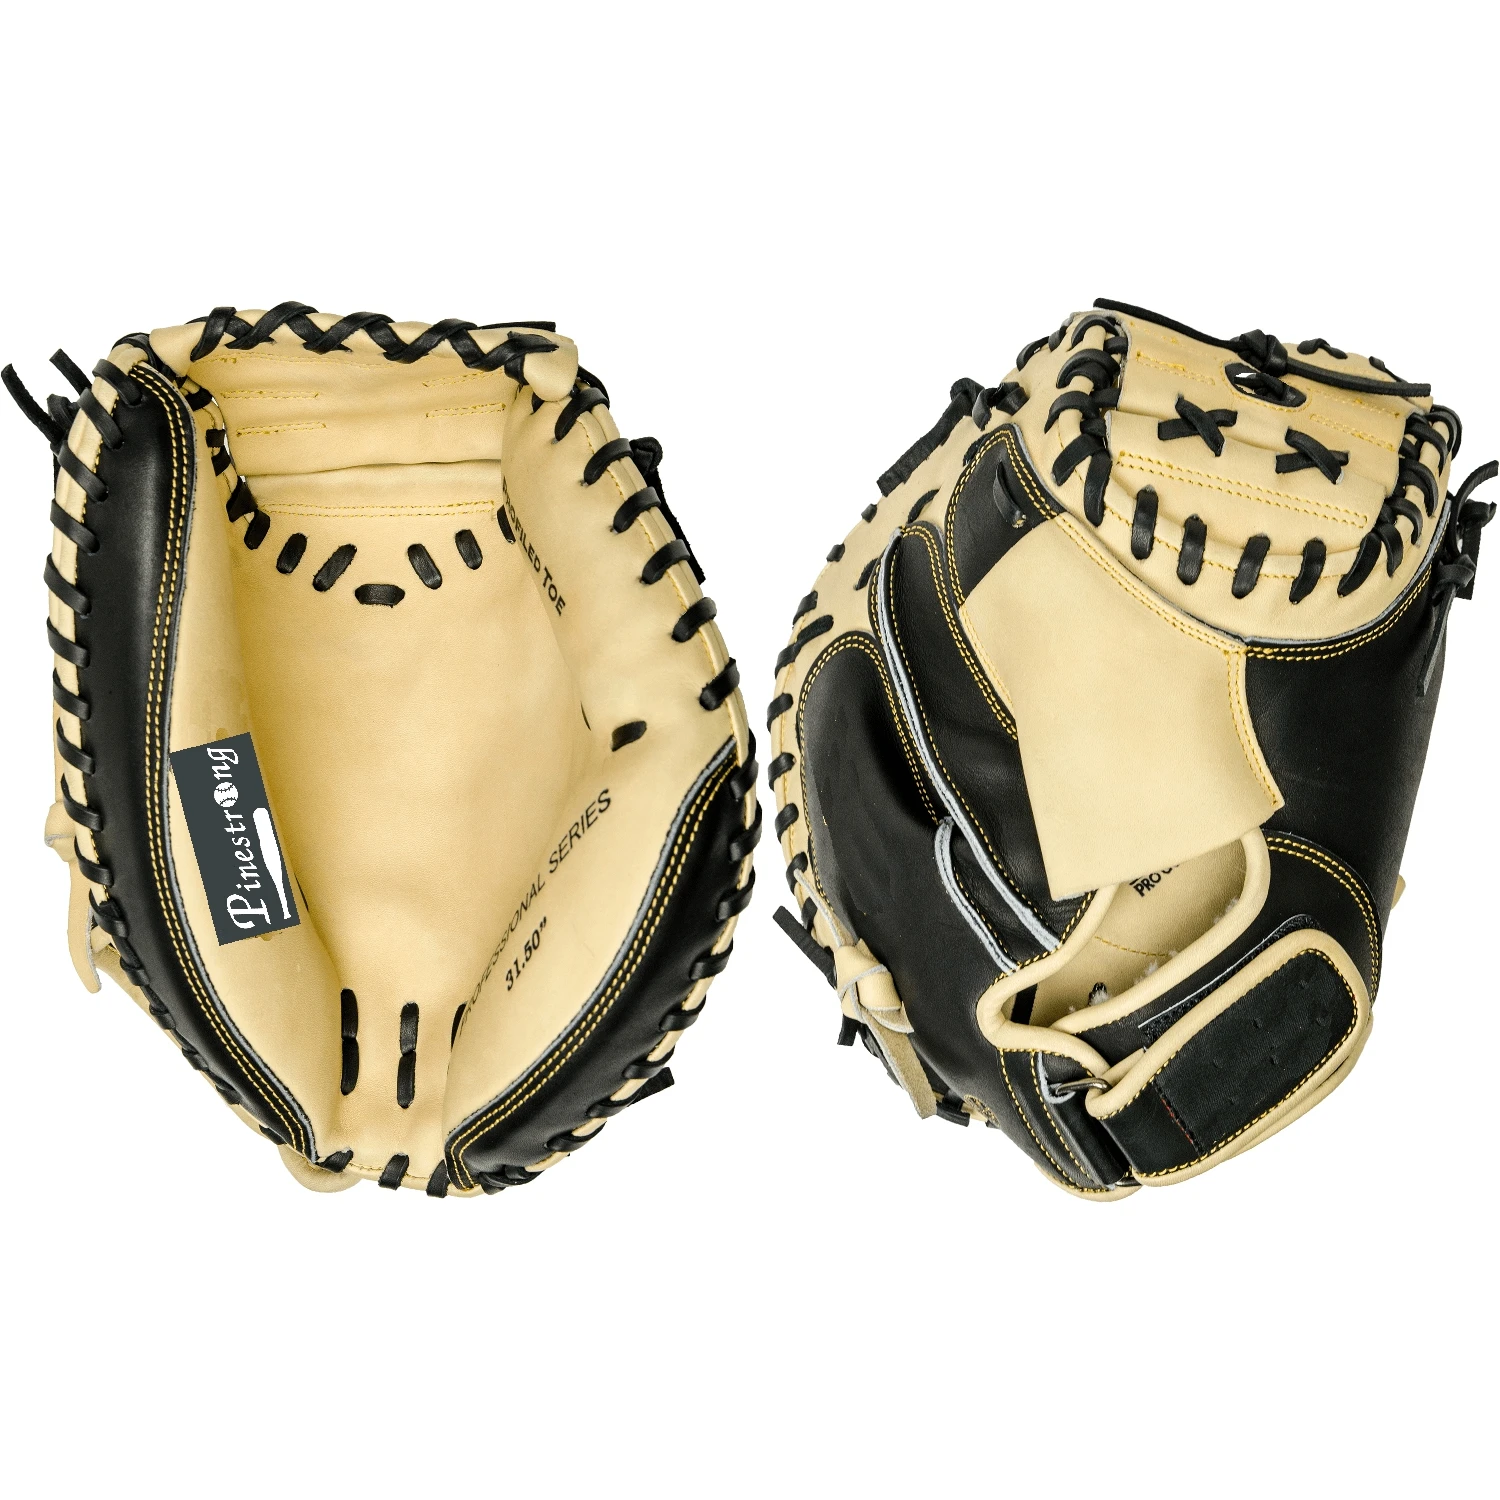 

Best Custom Japanese Baseball & Softball Gloves Kip Leather Professional Wholesale Baseball Batting Gloves